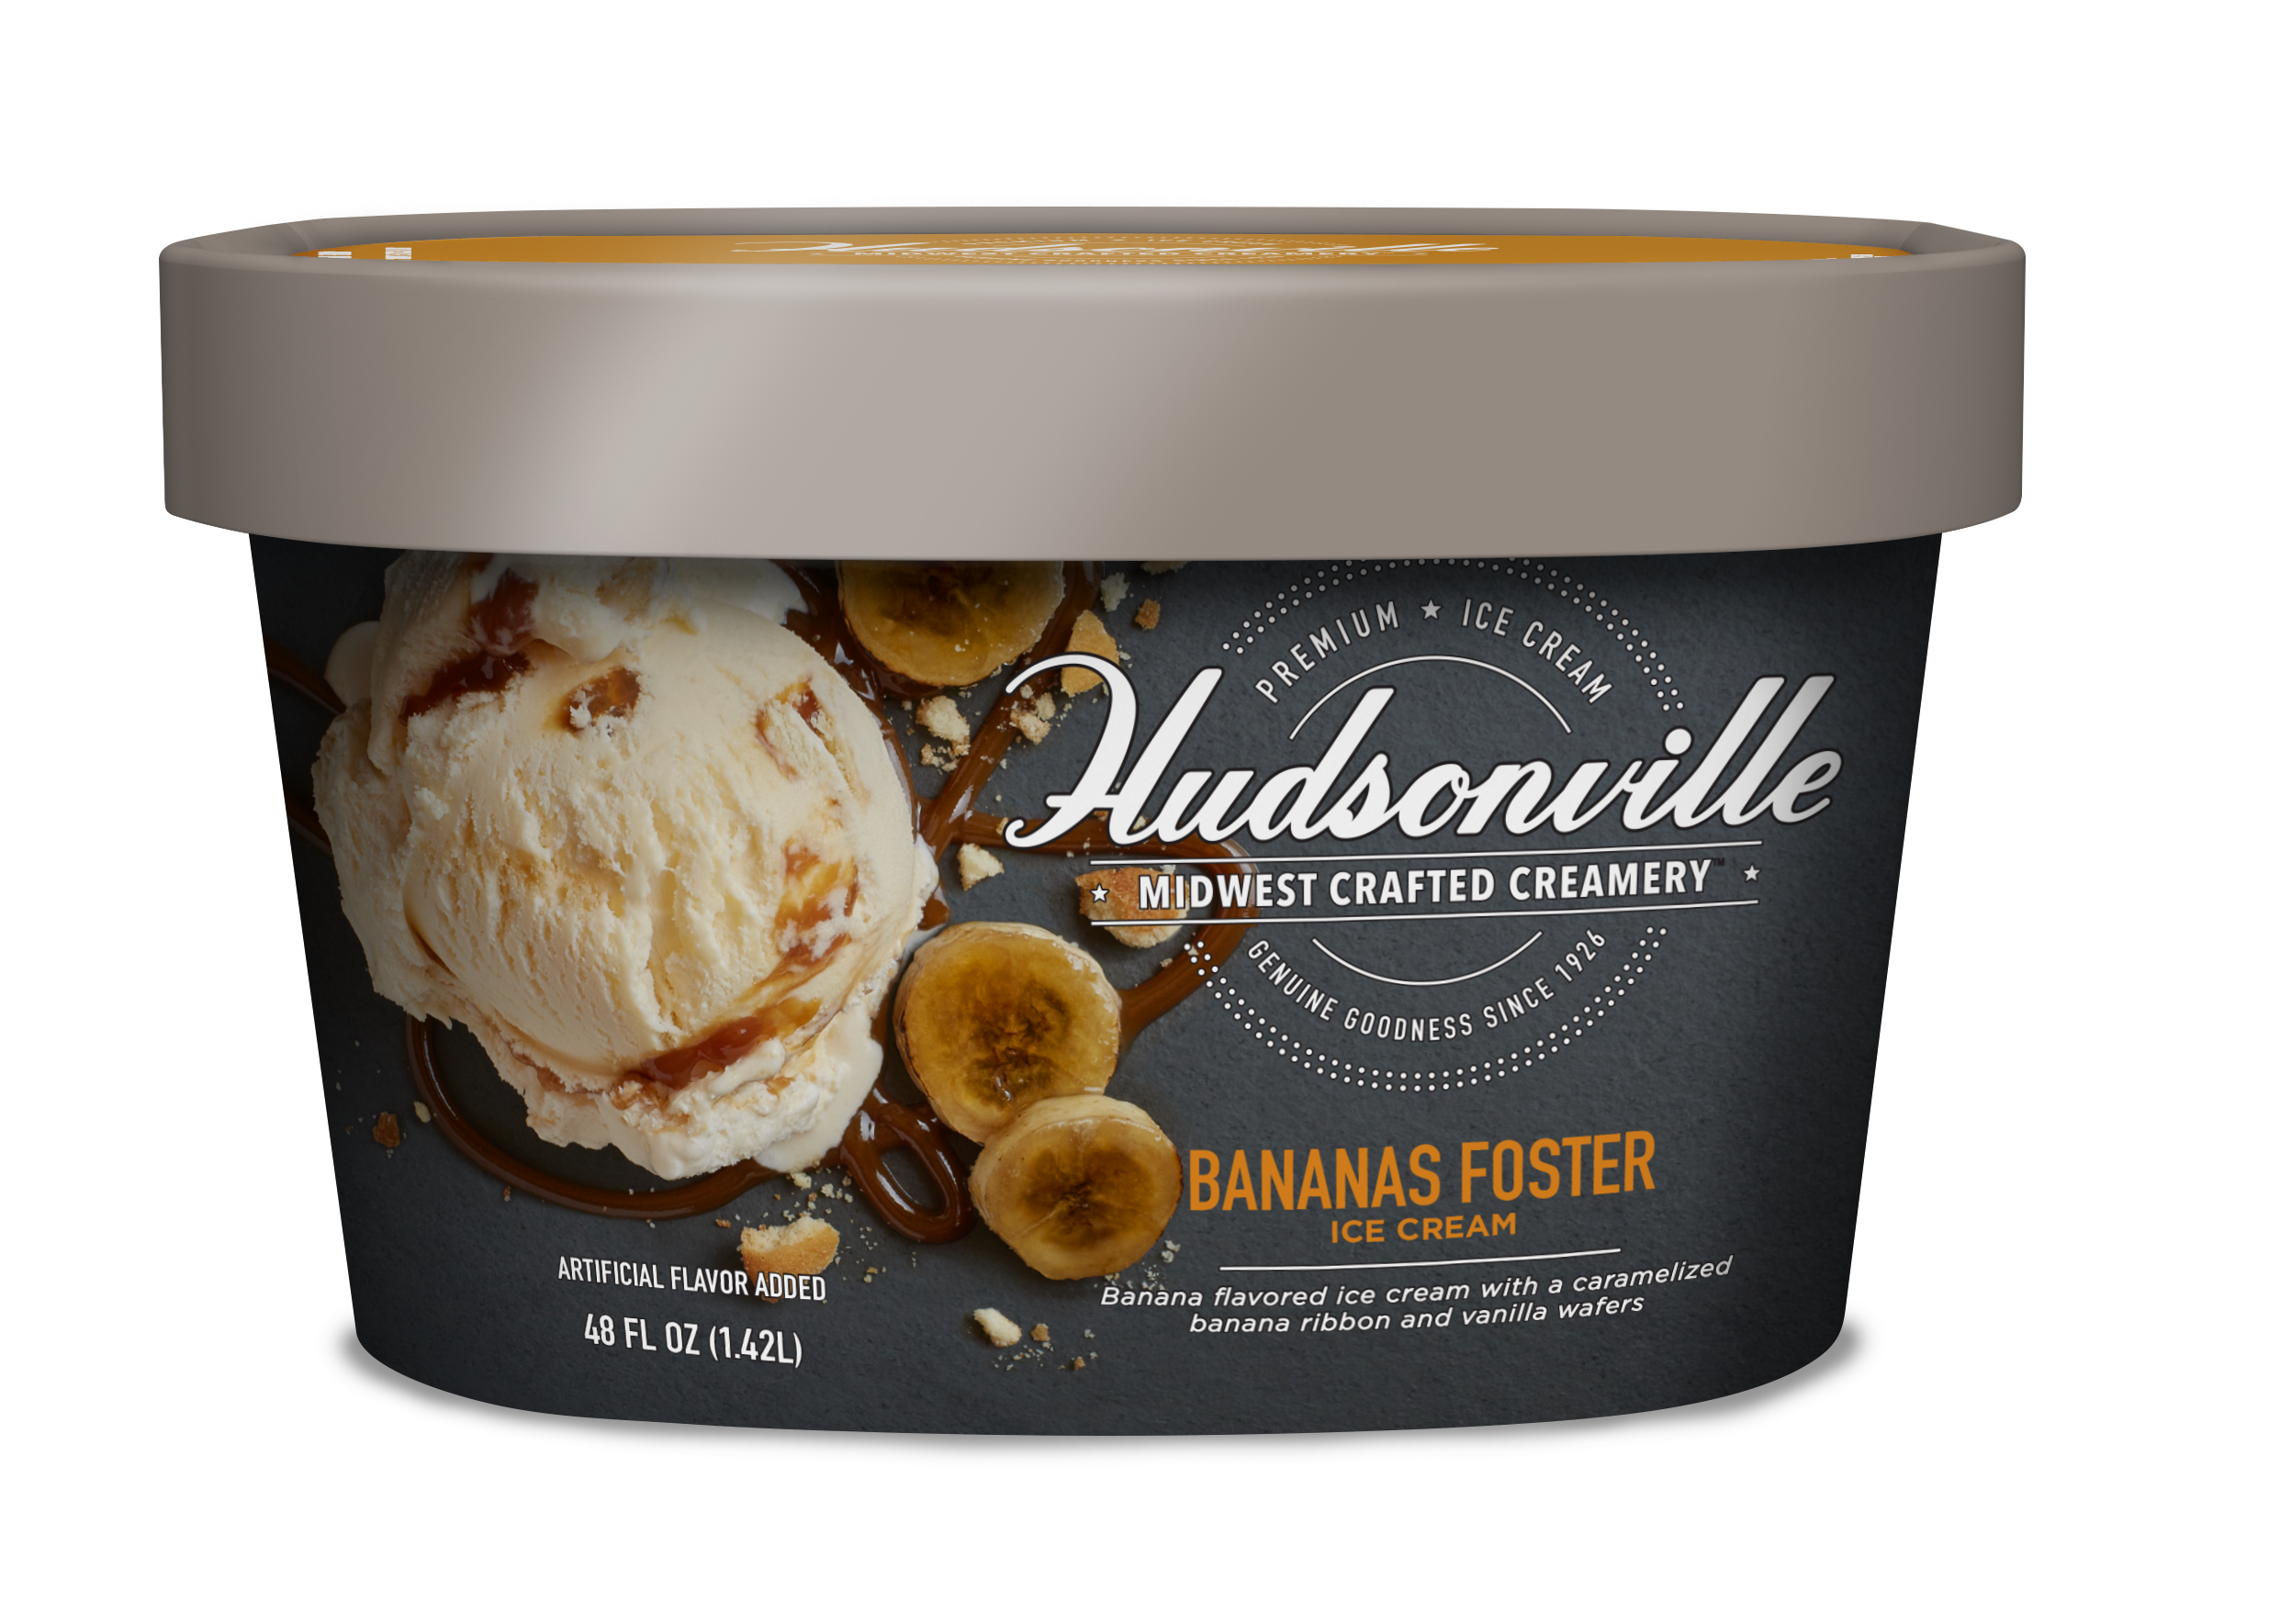 Hudsonville Ice Cream: Bananas Foster